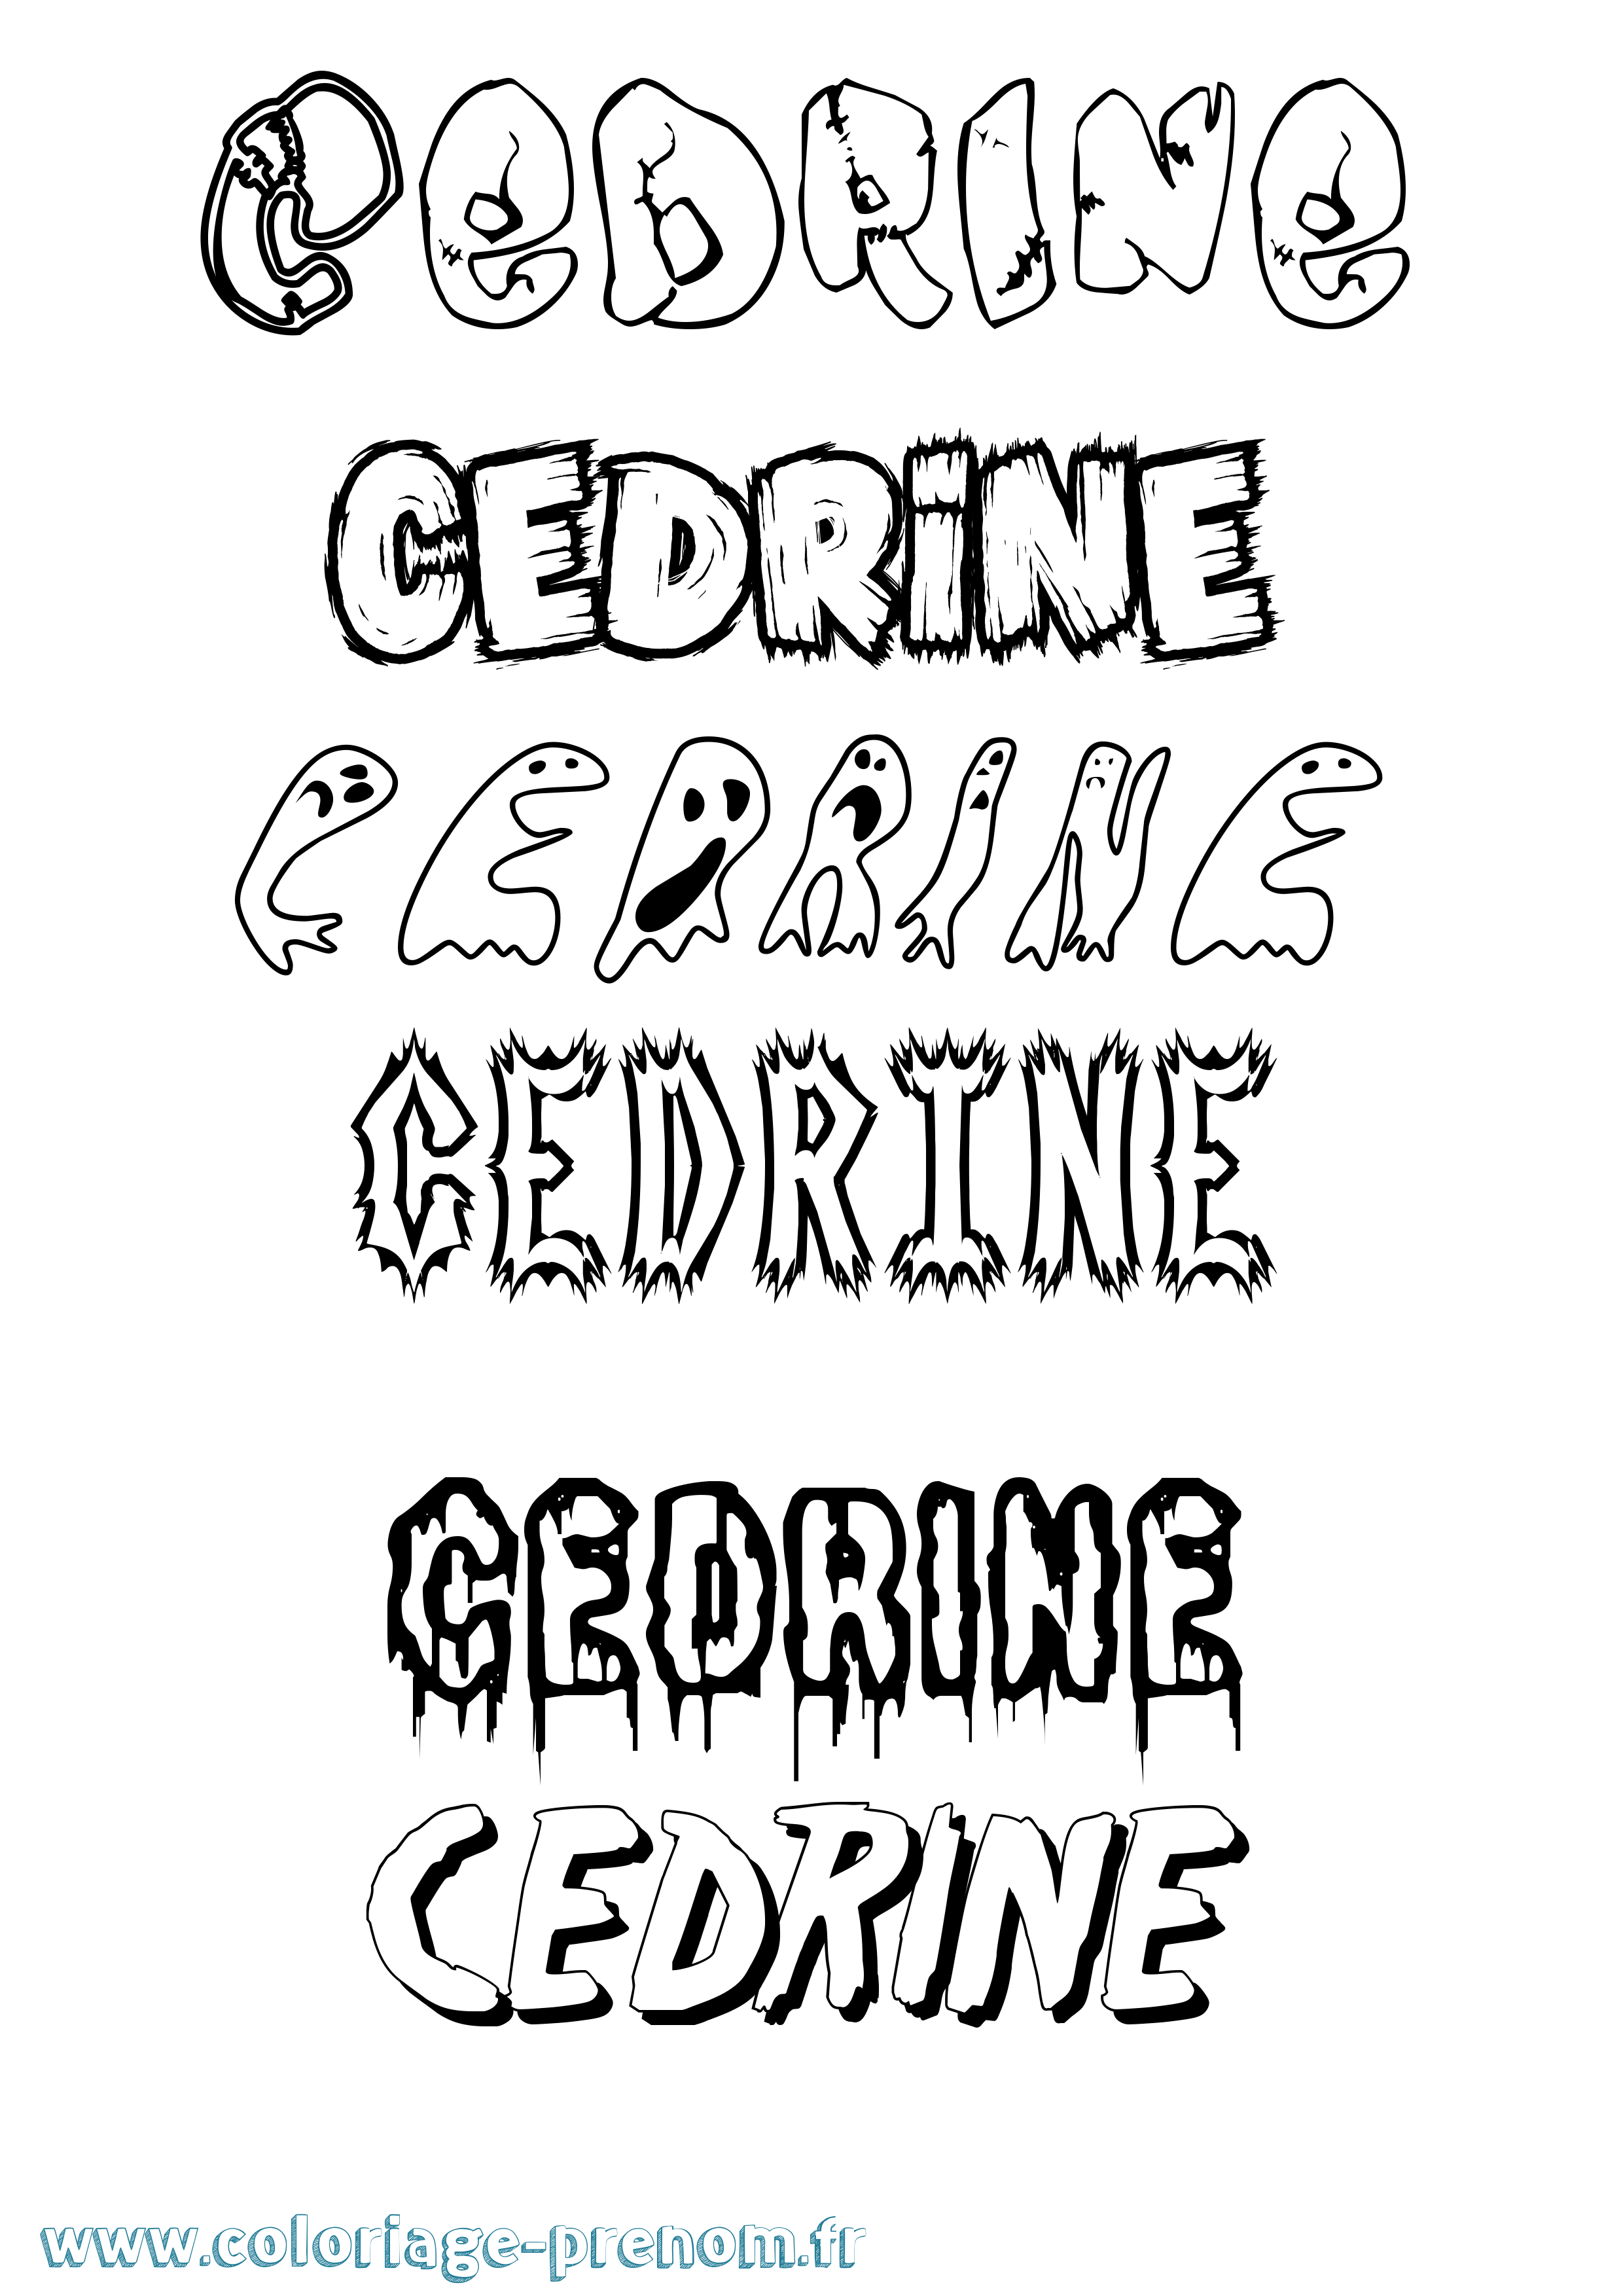 Coloriage prénom Cedrine Frisson